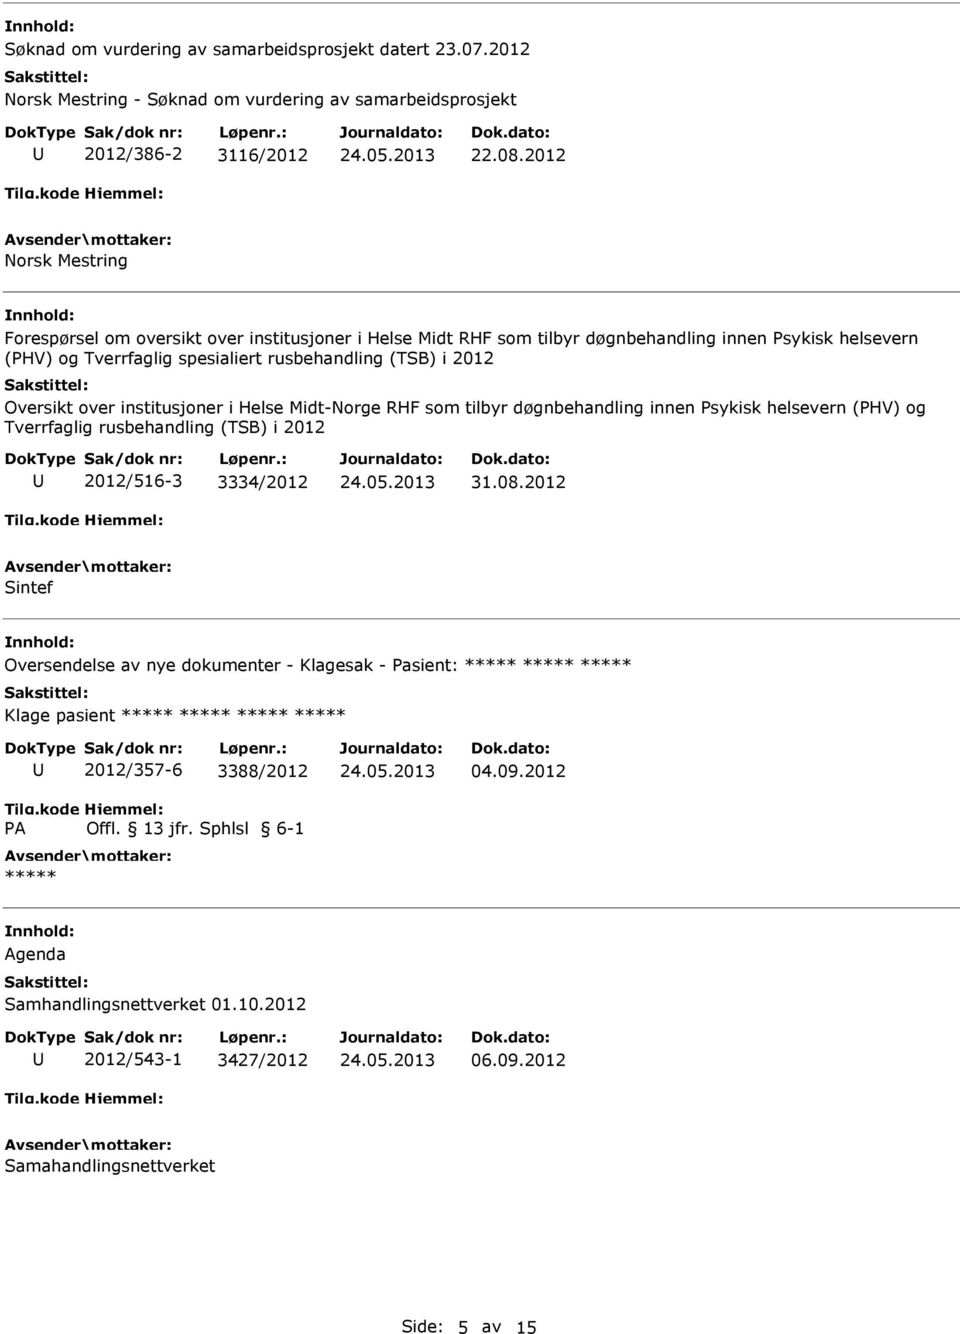 i 2012 Oversikt over institusjoner i Helse Midt-Norge RHF som tilbyr døgnbehandling innen sykisk helsevern (HV) og Tverrfaglig rusbehandling (TSB) i 2012 2012/516-3 3334/2012 31.08.